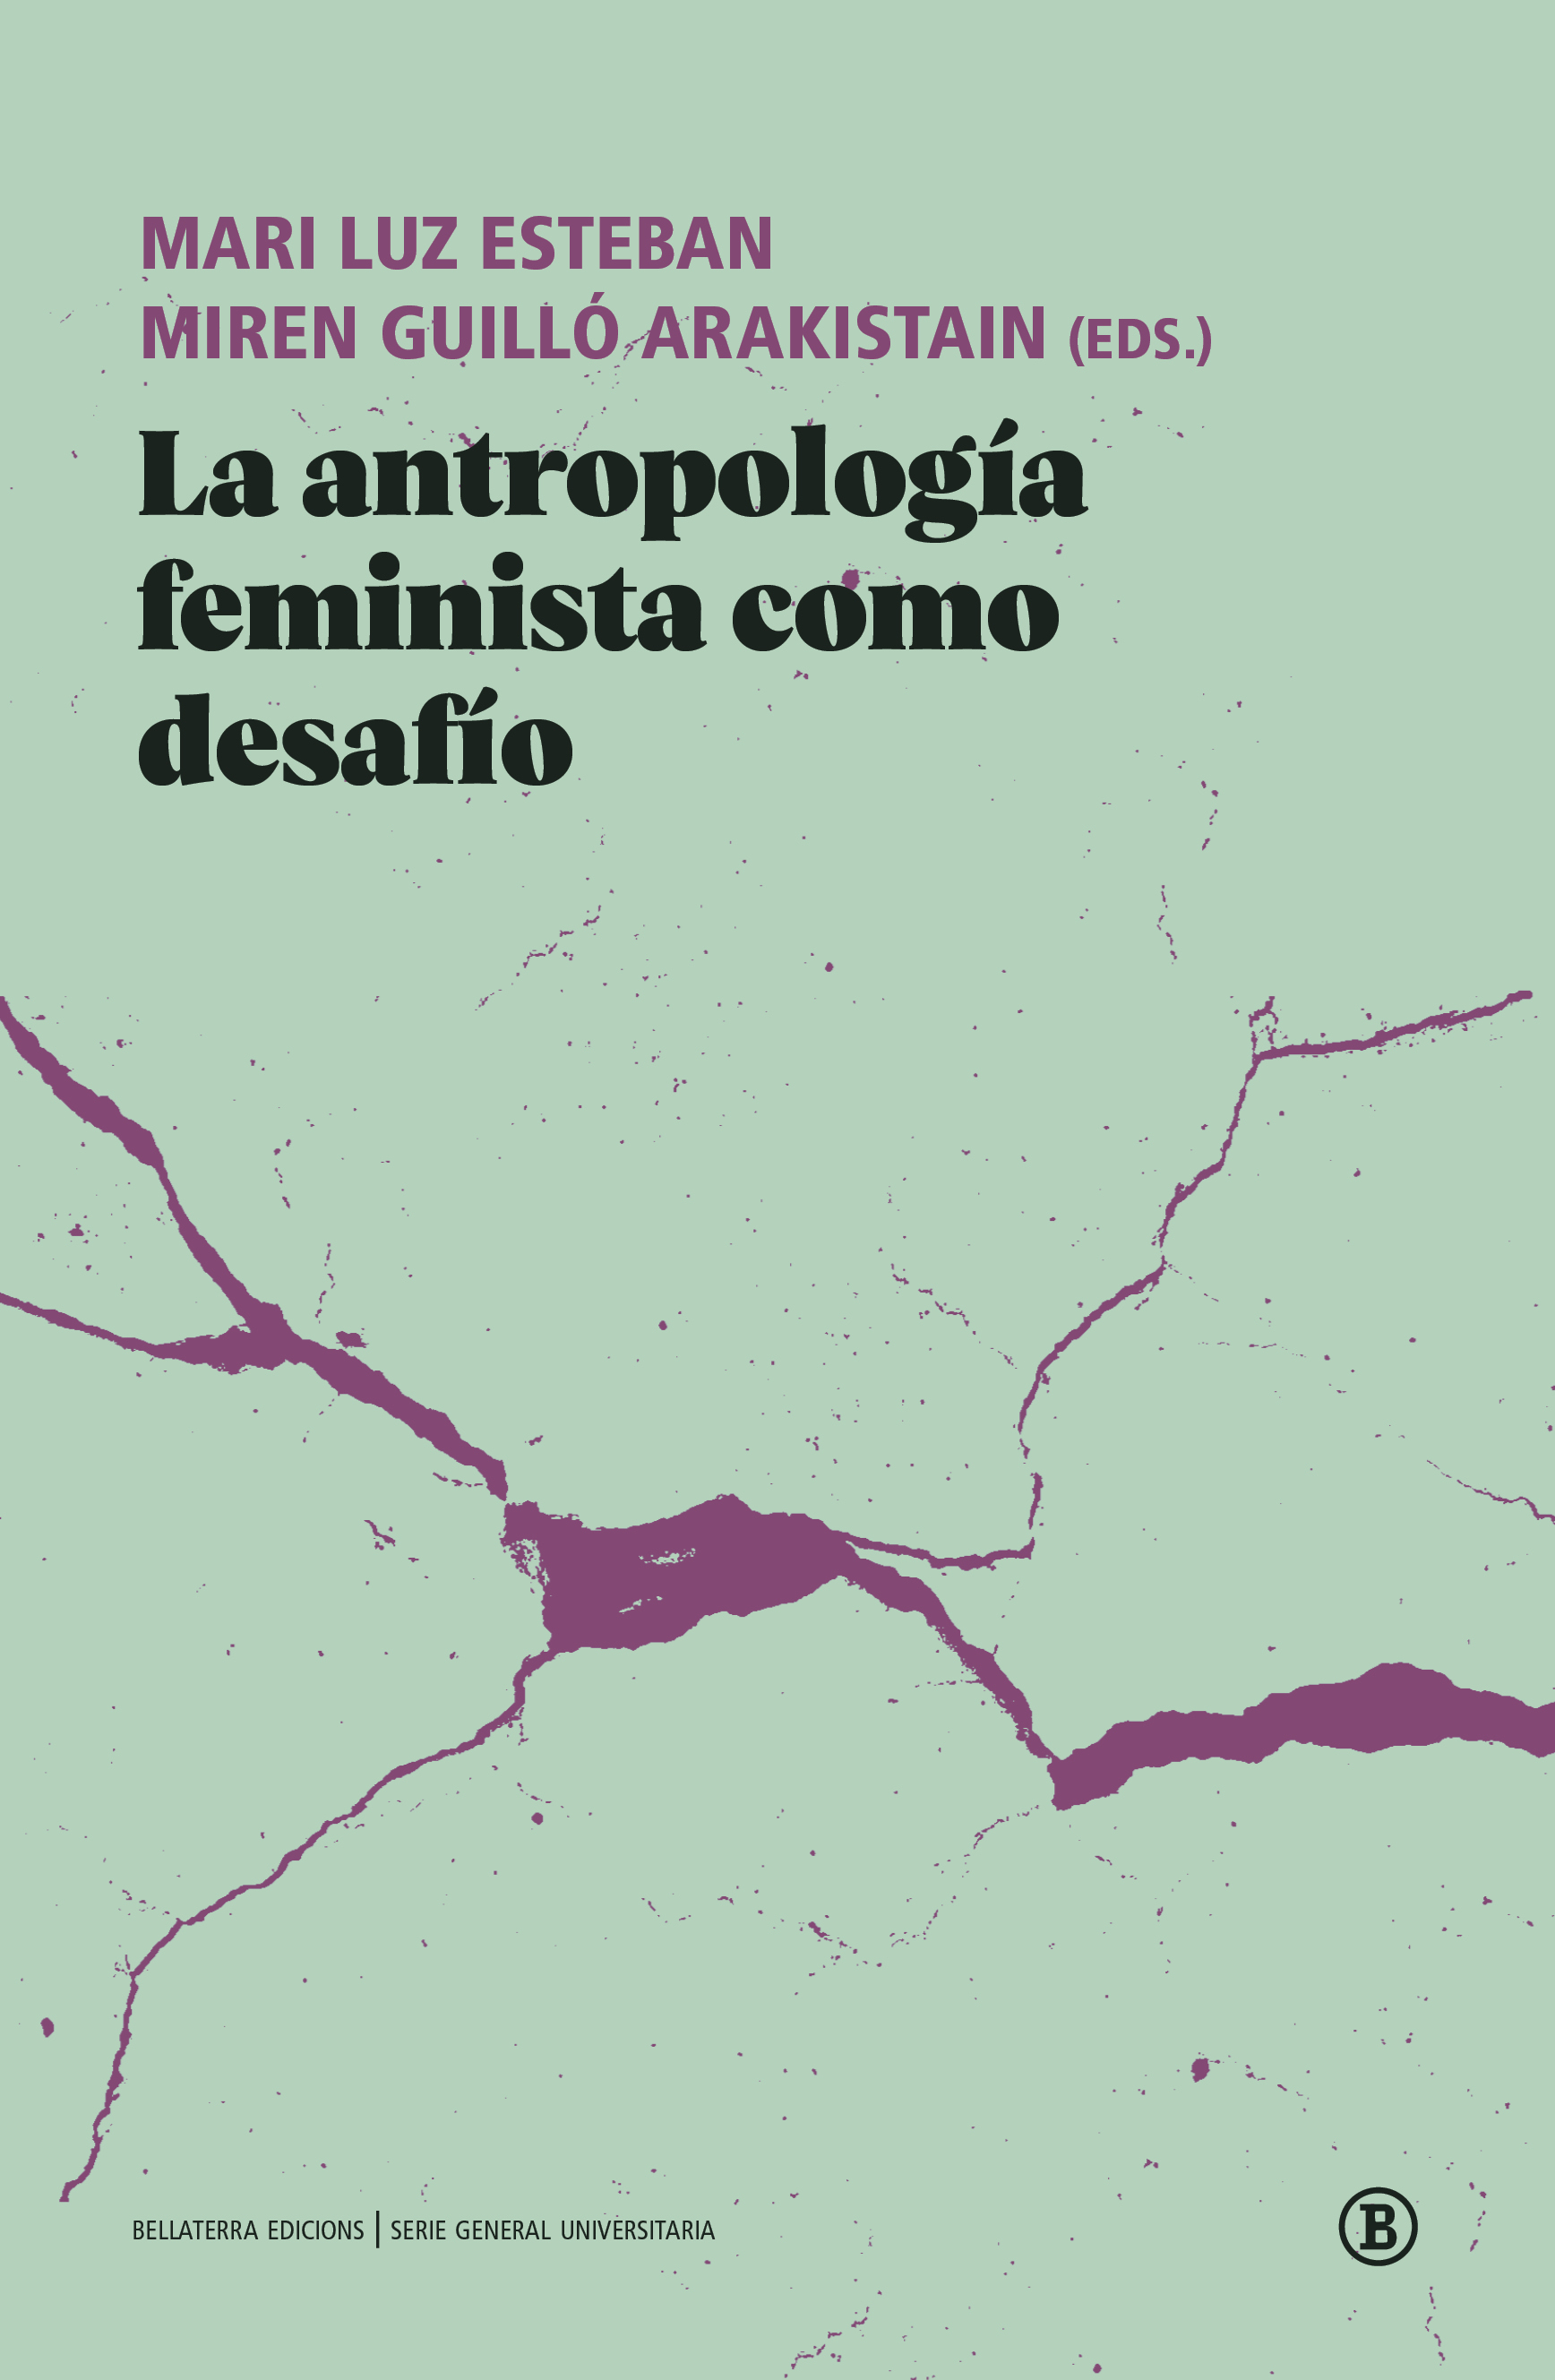 Imagen de portada del libro La antropología feminista como desafío